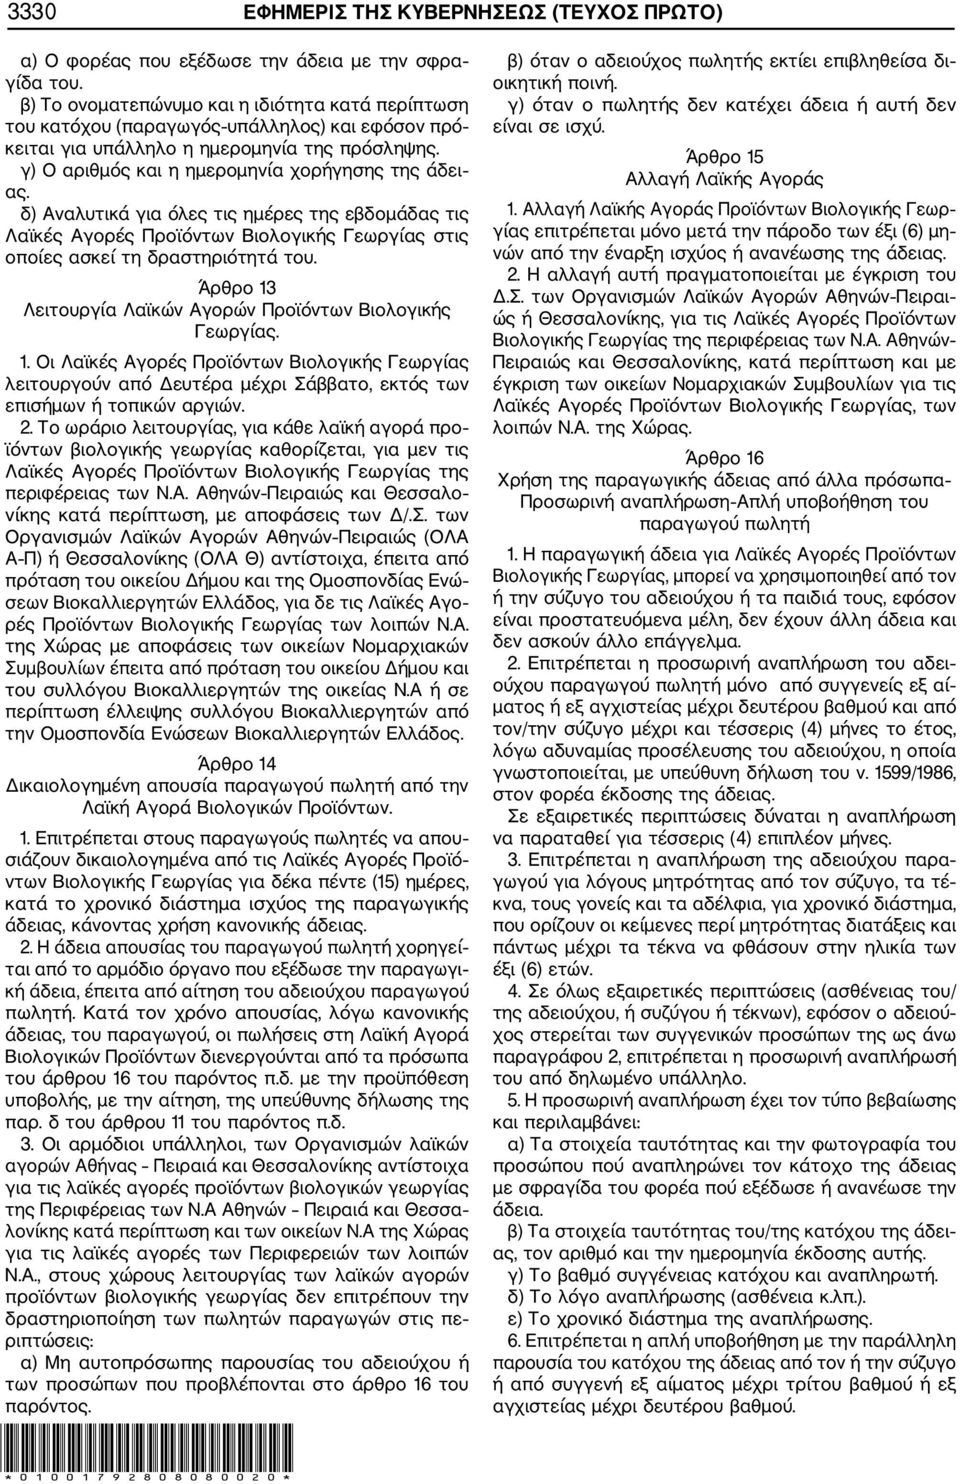 δ) Αναλυτικά για όλες τις ημέρες της εβδομάδας τις Λαϊκές Αγορές Προϊόντων Βιολογικής Γεωργίας στις οποίες ασκεί τη δραστηριότητά του. Άρθρο 13 Λειτουργία Λαϊκών Αγορών Προϊόντων Βιολογικής Γεωργίας.